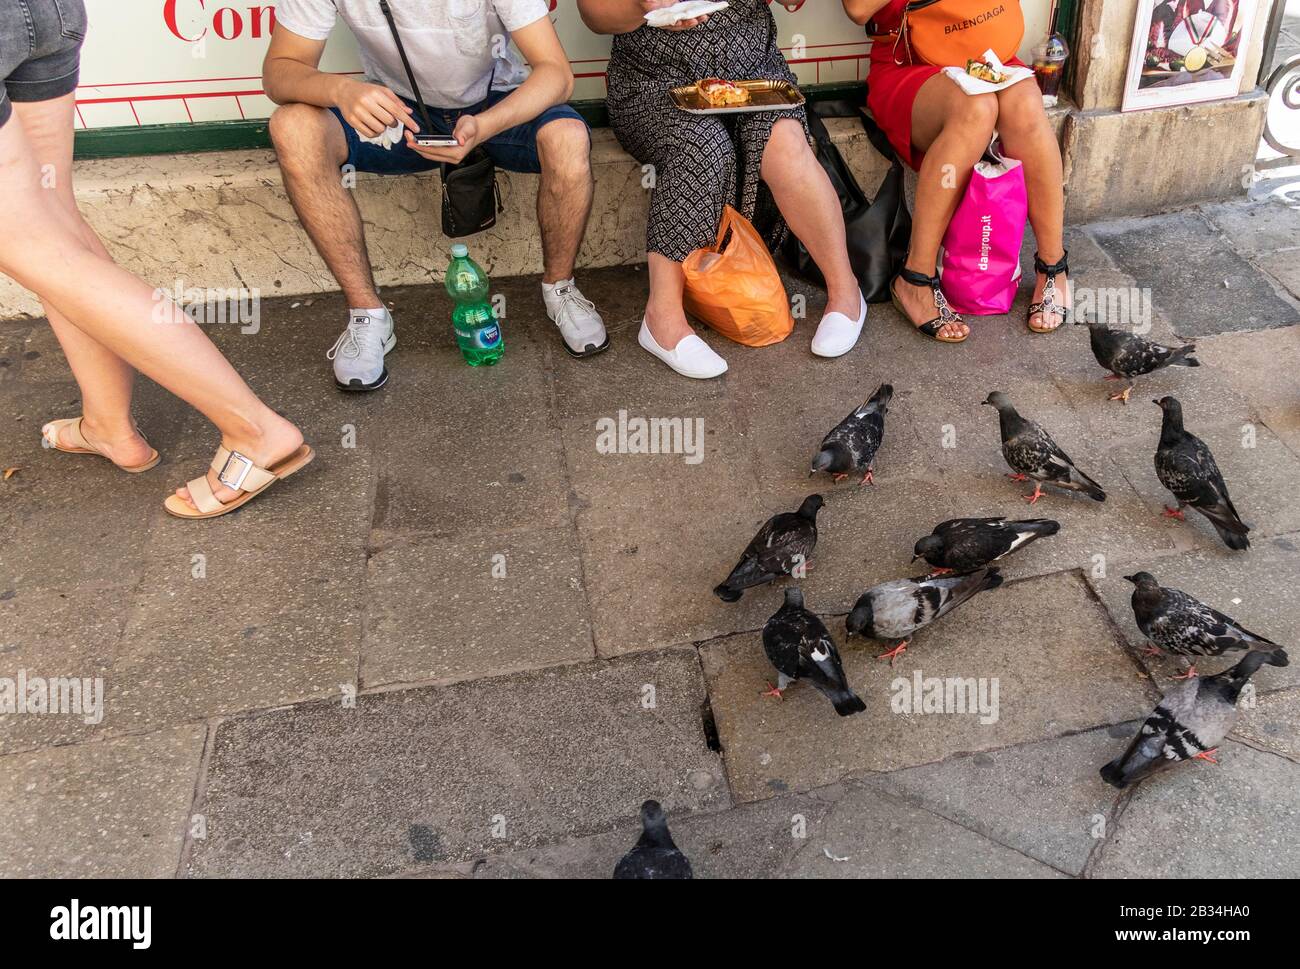 Ristoranti turistici take away, fast food per le strade di Venezia, Italia Foto Stock